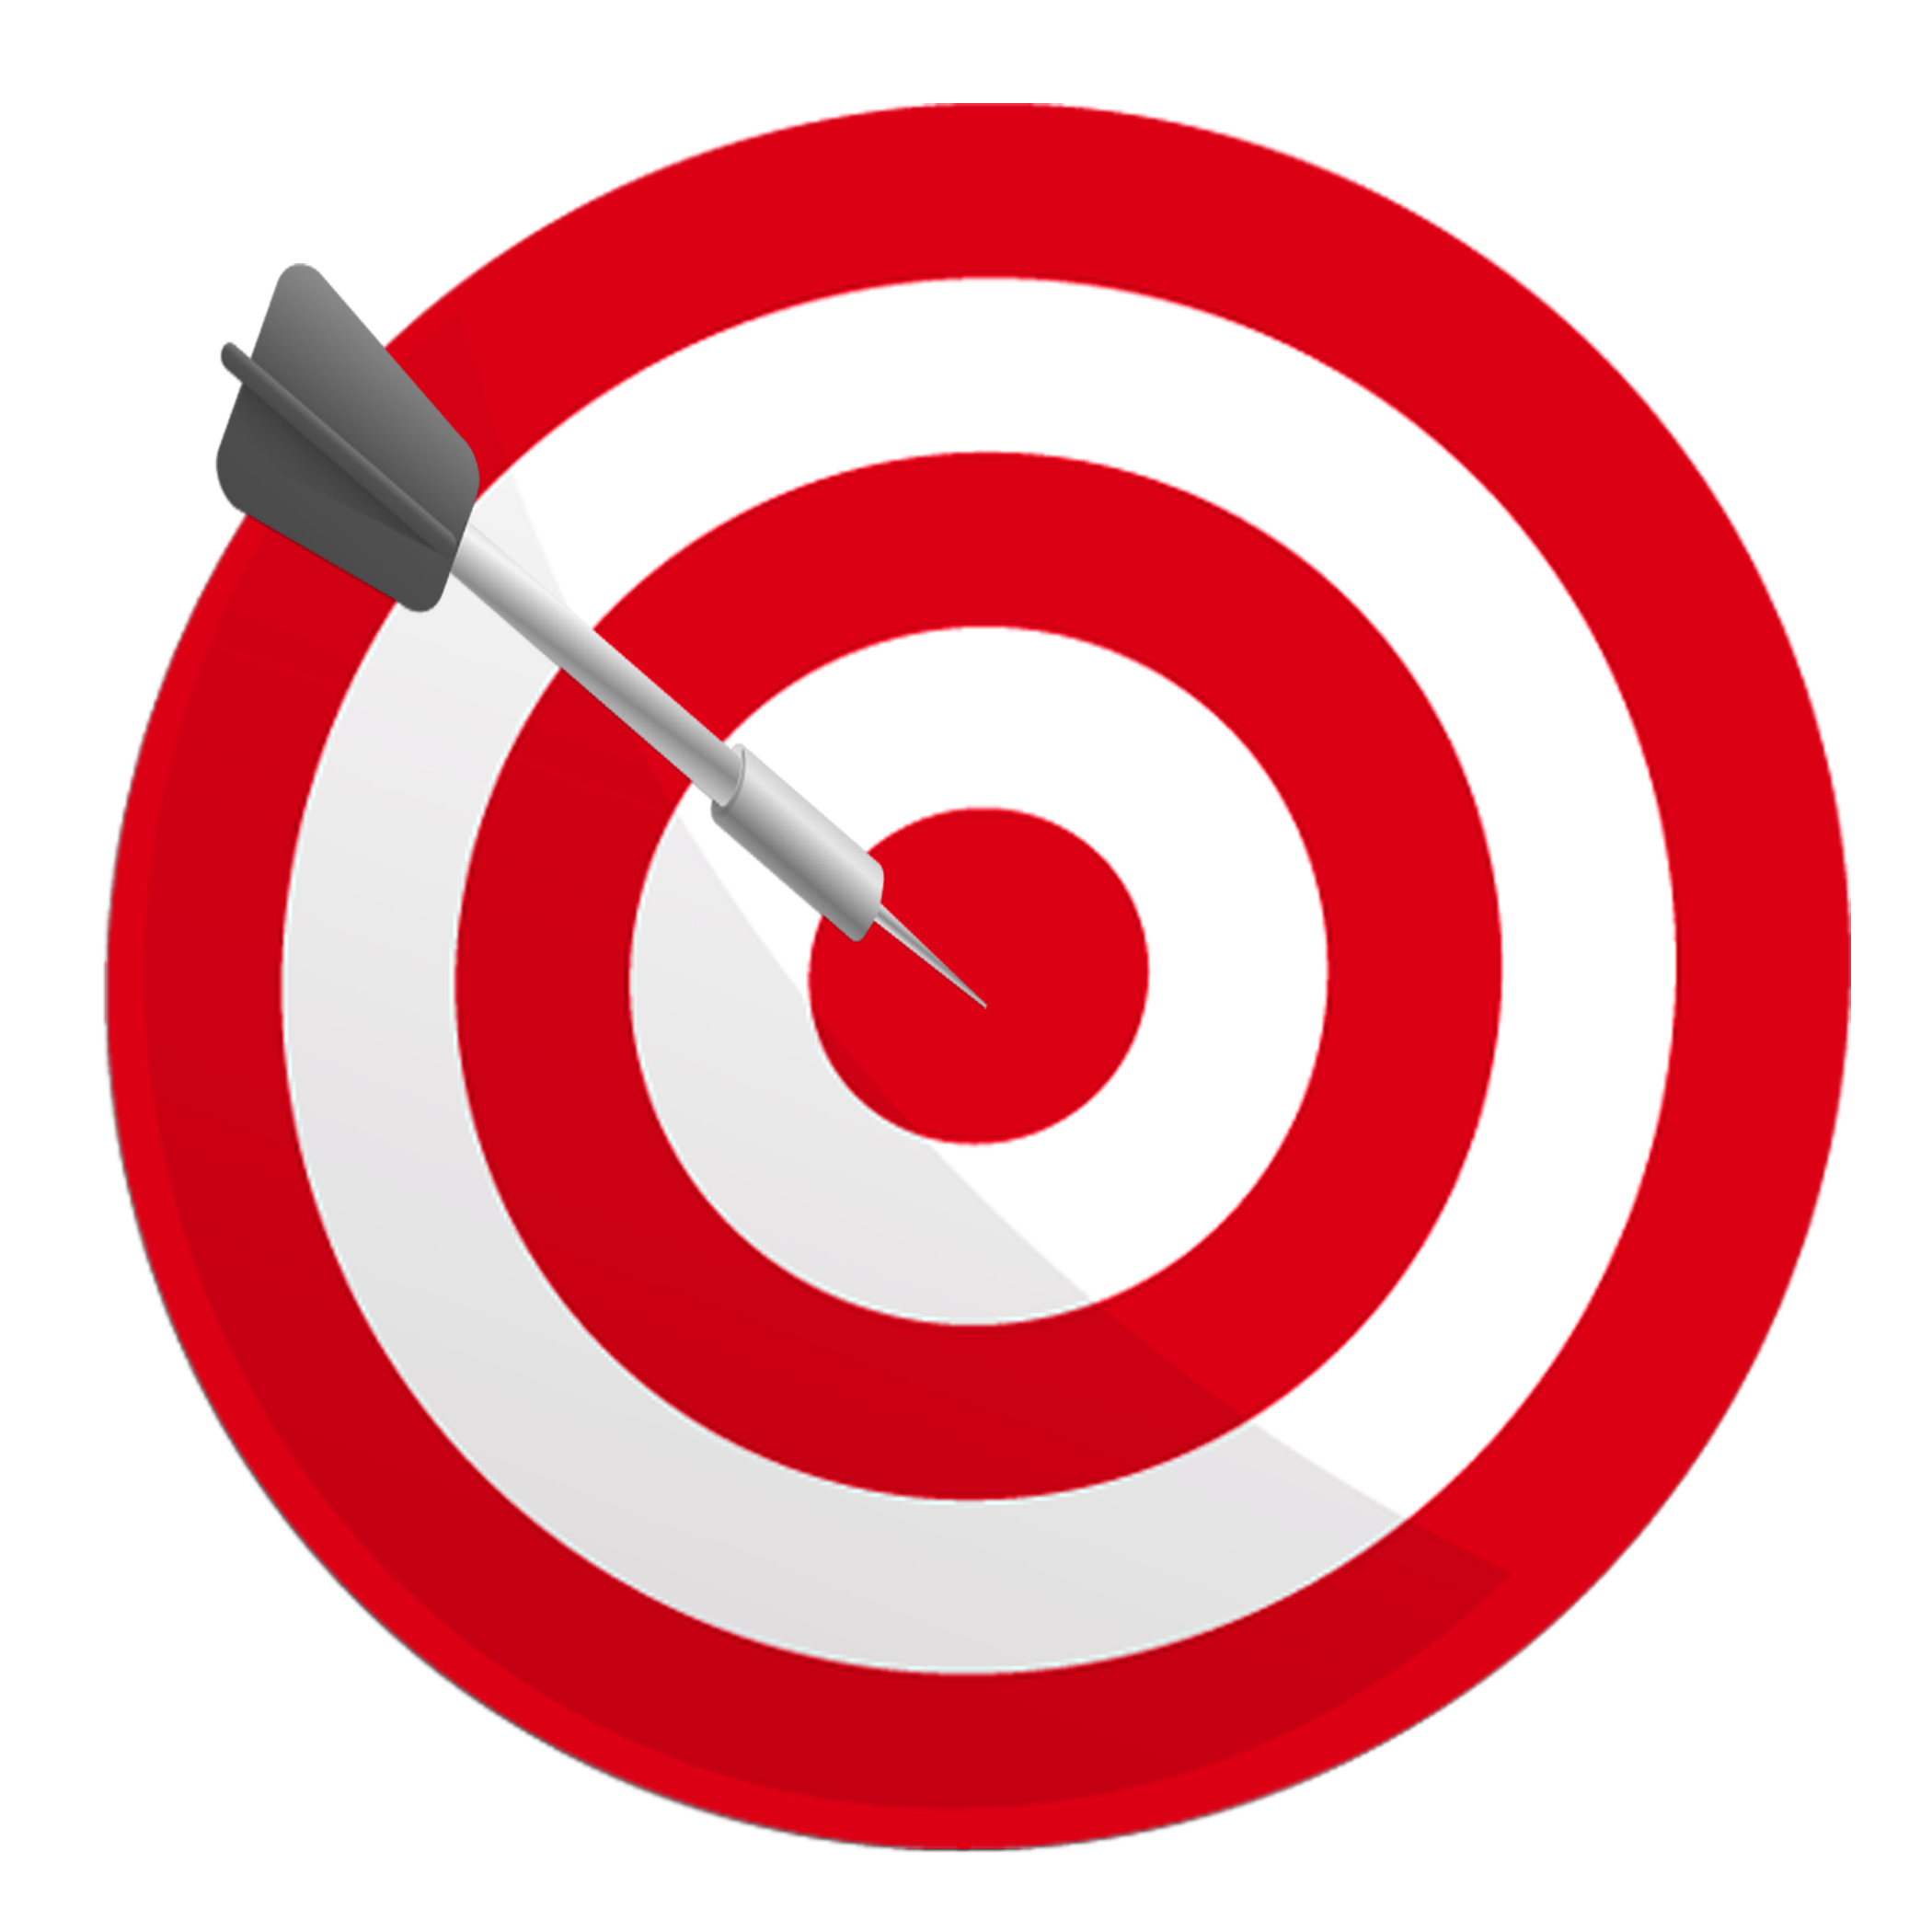 focus clipart symbol target